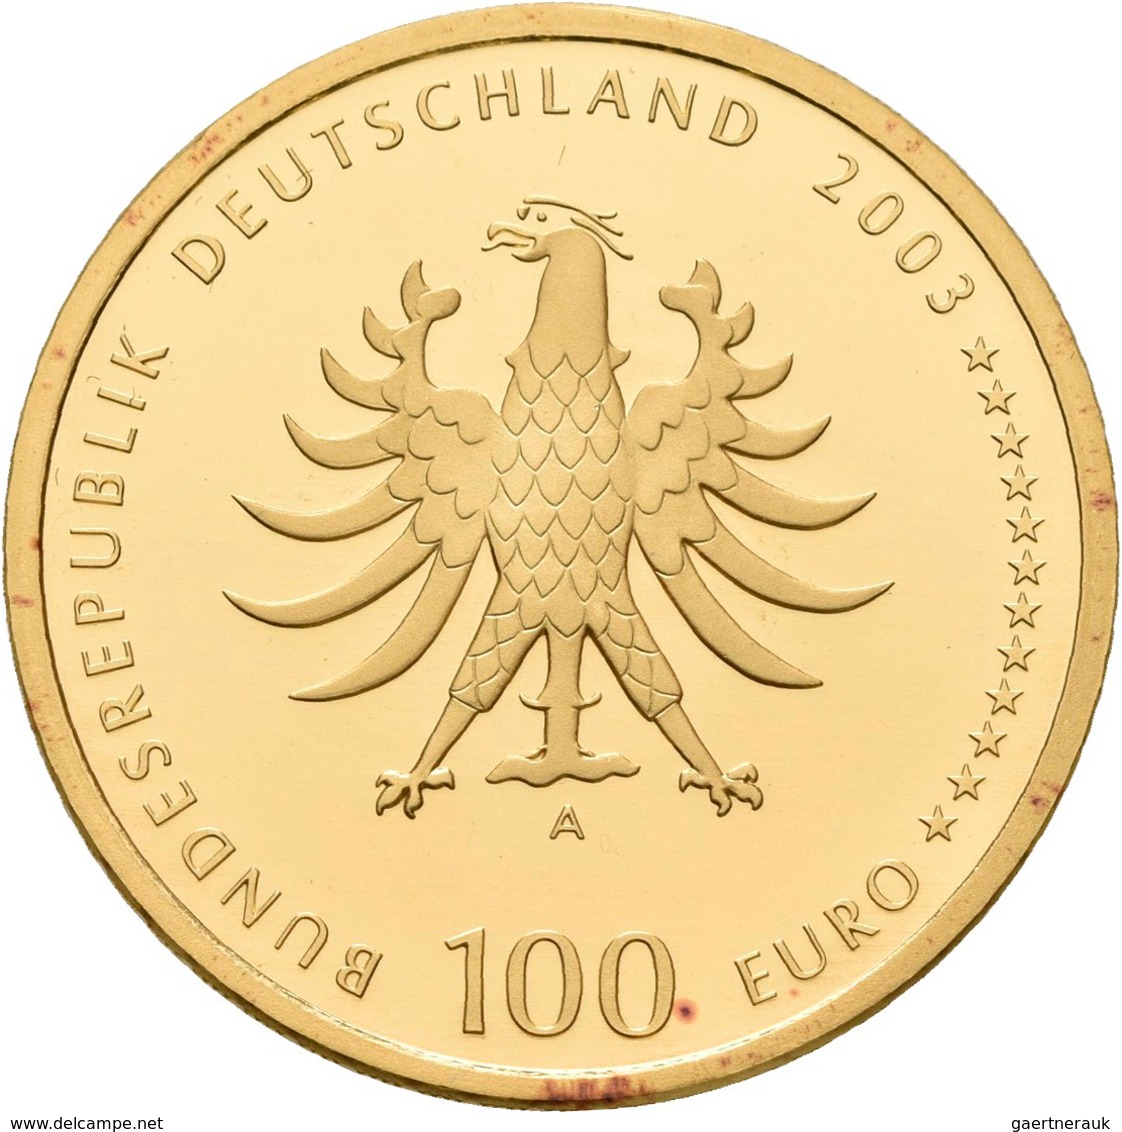 Deutschland - Anlagegold: 2 X 100 Euro 2003 Quedlinburg (A - Berlin), In Originalkapsel Und Etui, Mi - Germany